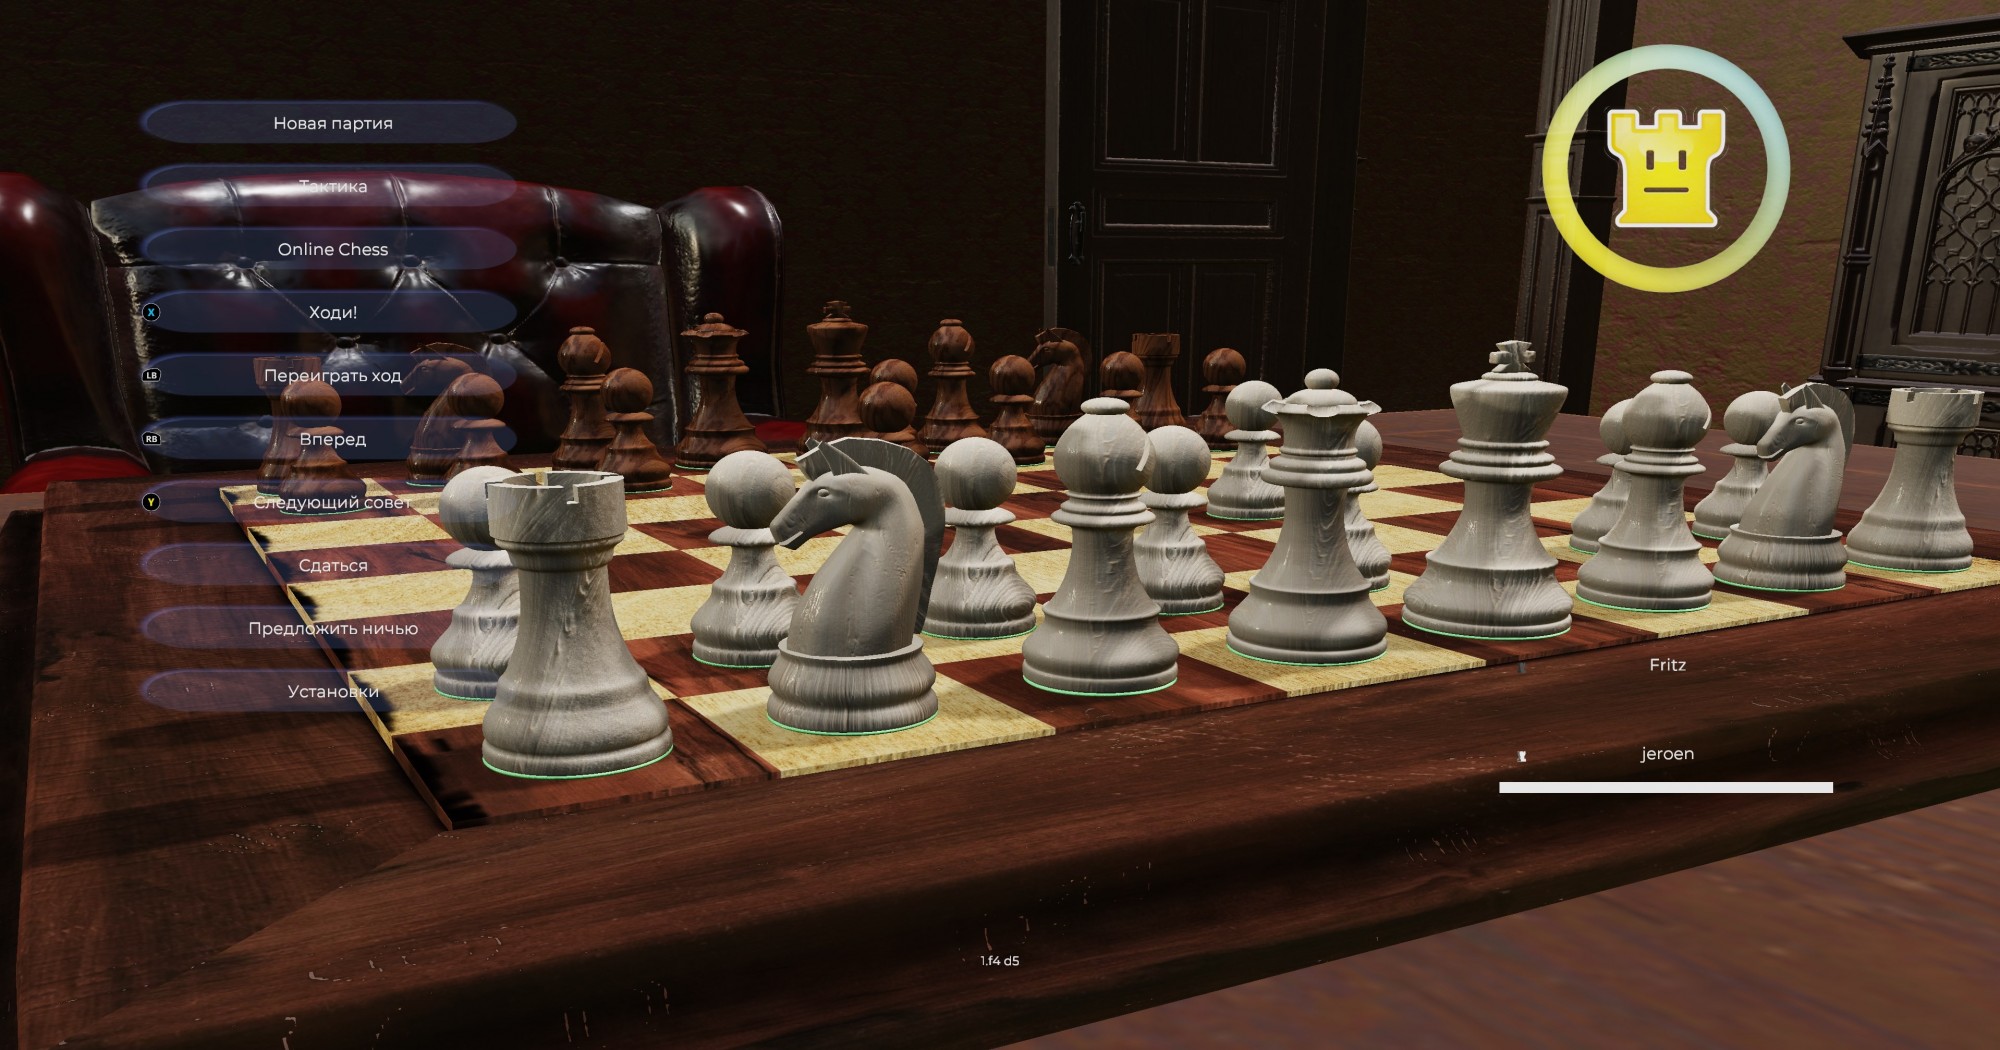 Buy Fritz - Don't call me a chess bot - Microsoft Store en-AI